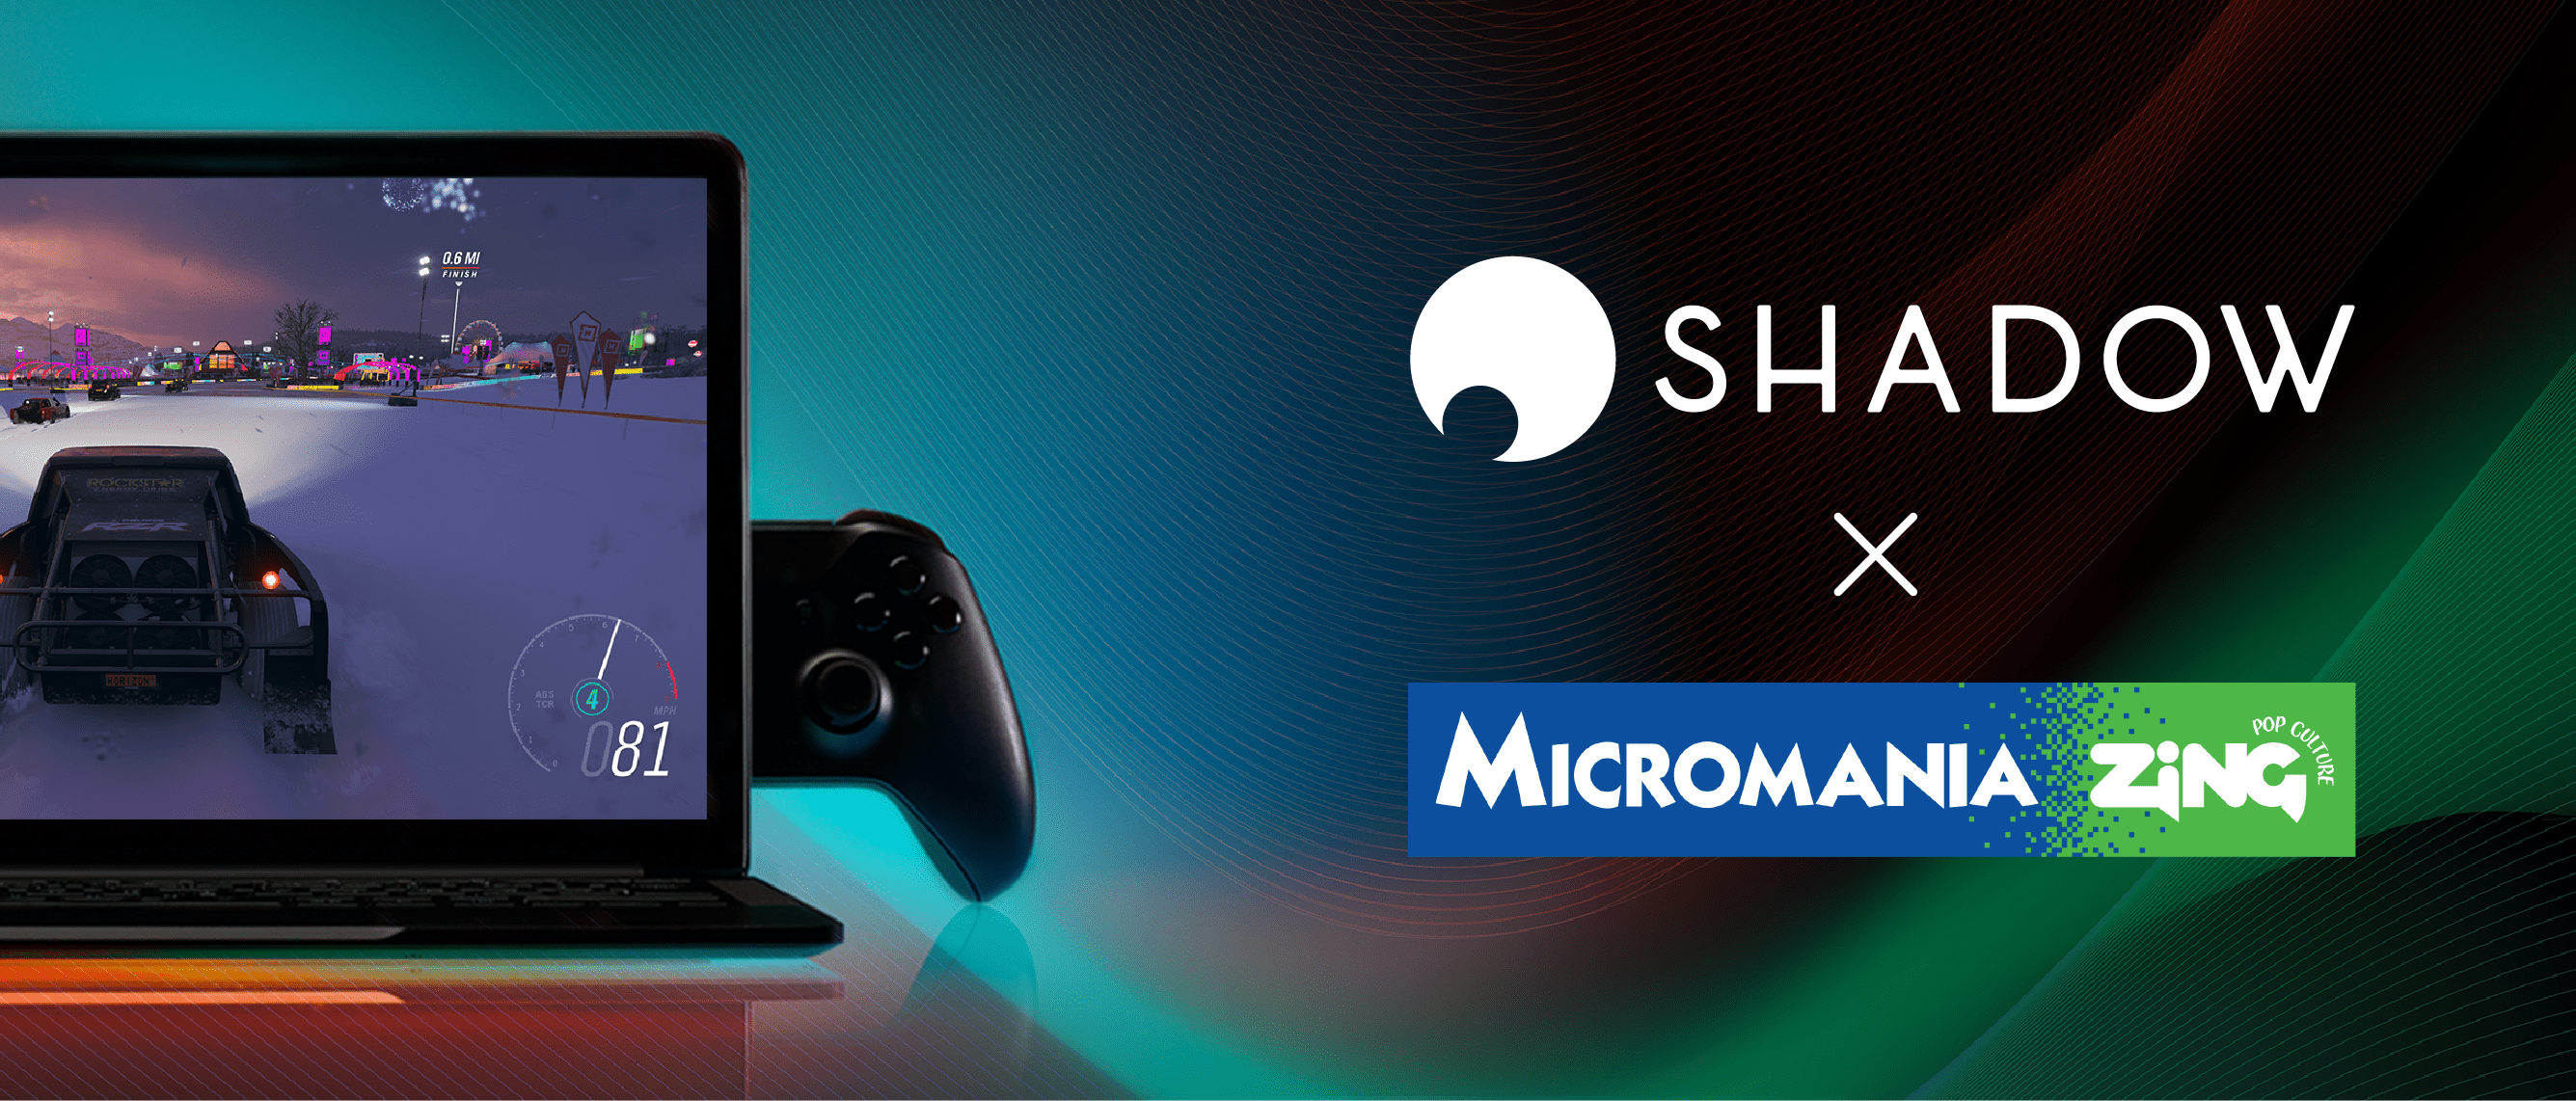 Shadow s’invite chez Micromania ! [02/2020 : fin de l'offre]